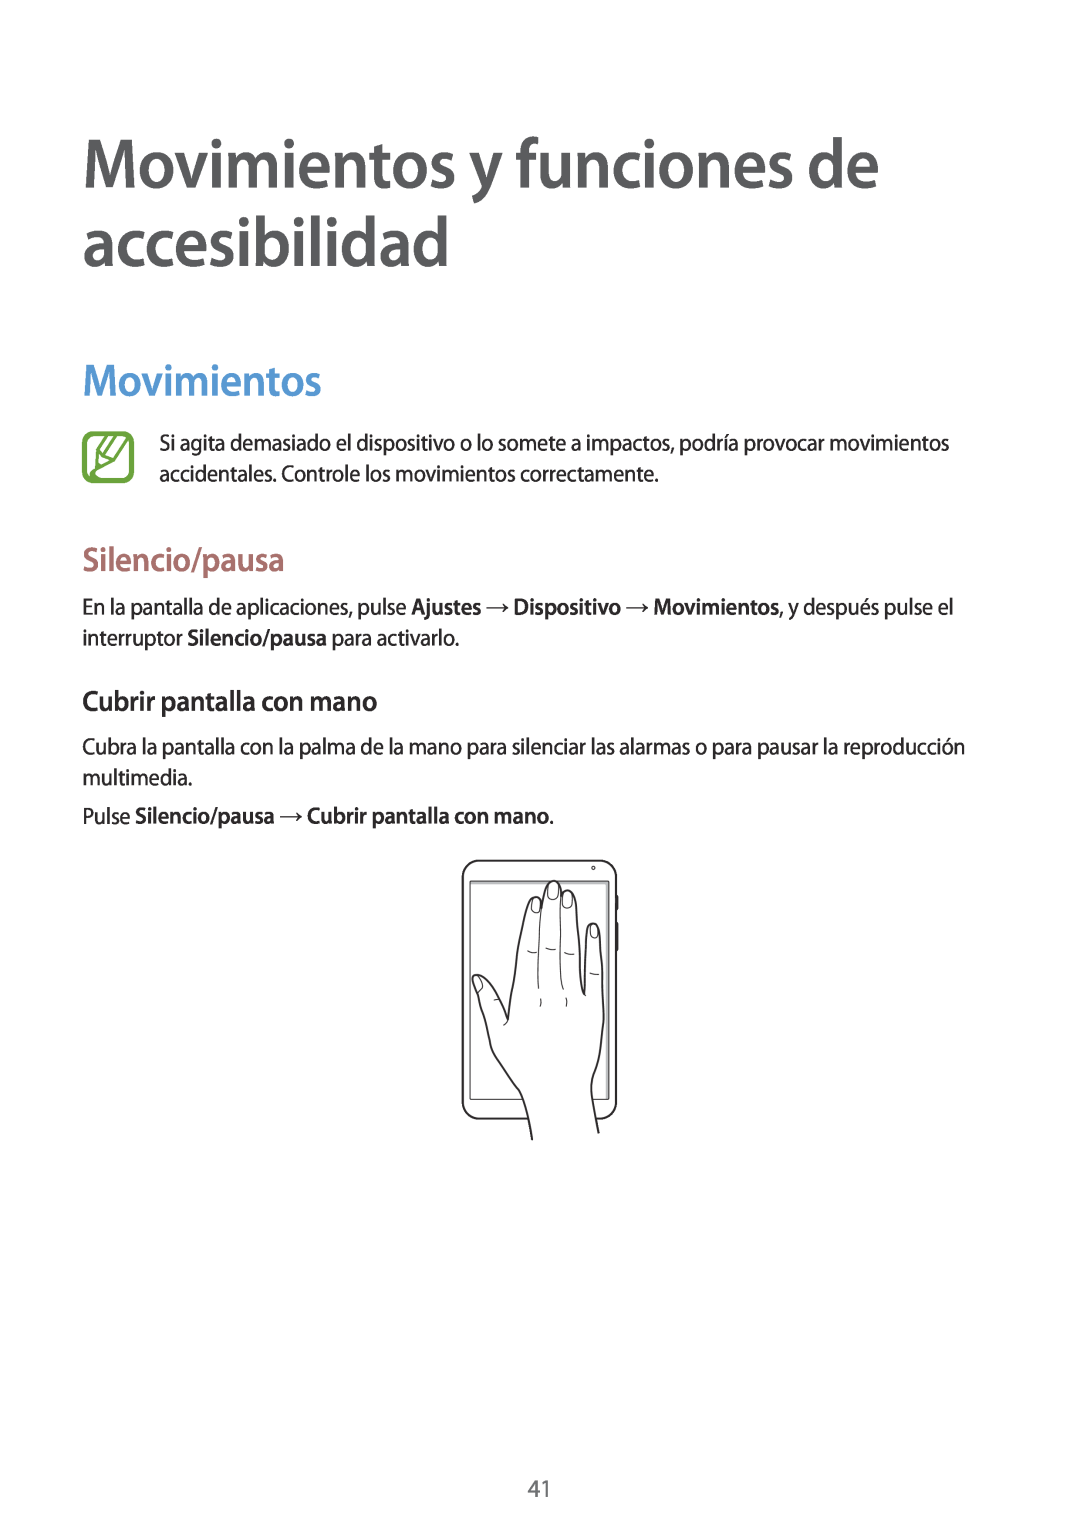 Samsung SM-T700NZWADBT, SM-T700NZWAXEO Movimientos y funciones de accesibilidad, Silencio/pausa, Cubrir pantalla con mano 